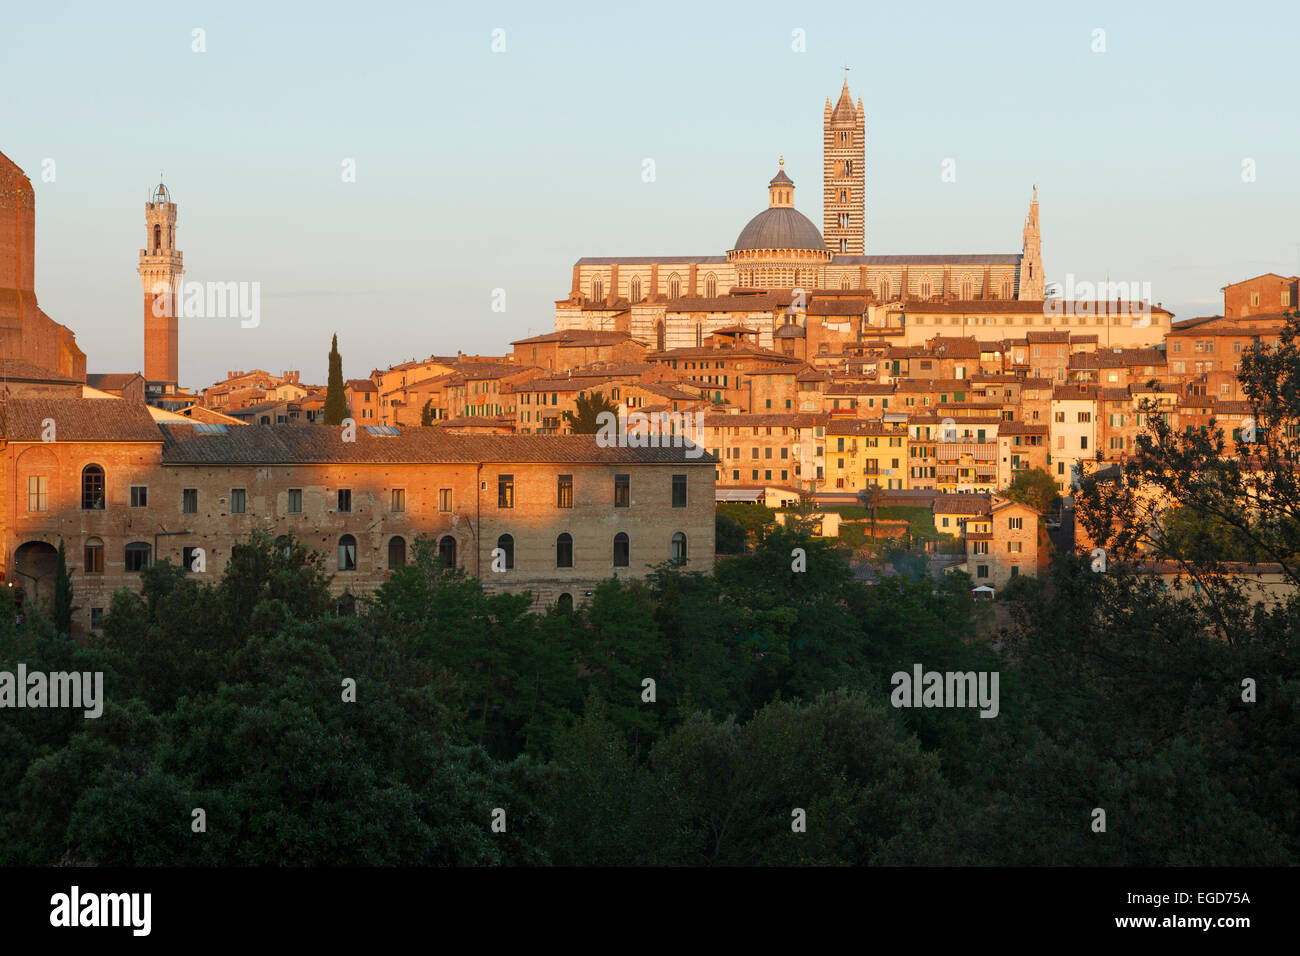 Vue urbaine avec Torre del Mangia Bell Tower, hôtel de ville et cathédrale Santa Maria, la cathédrale de Sienne, UNESCO World Heritage Site, Toscane, Italie, Europe Banque D'Images